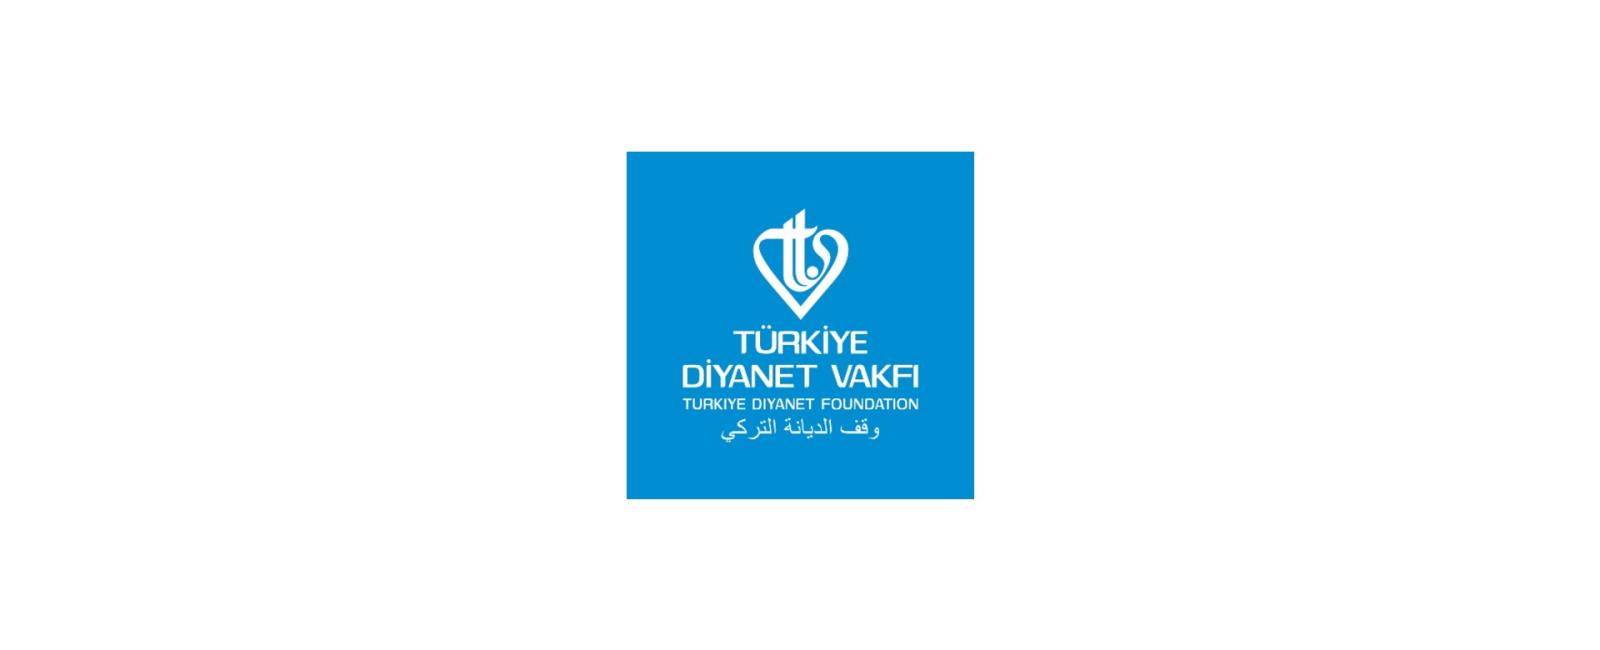 موقع وقف الديانة التركي